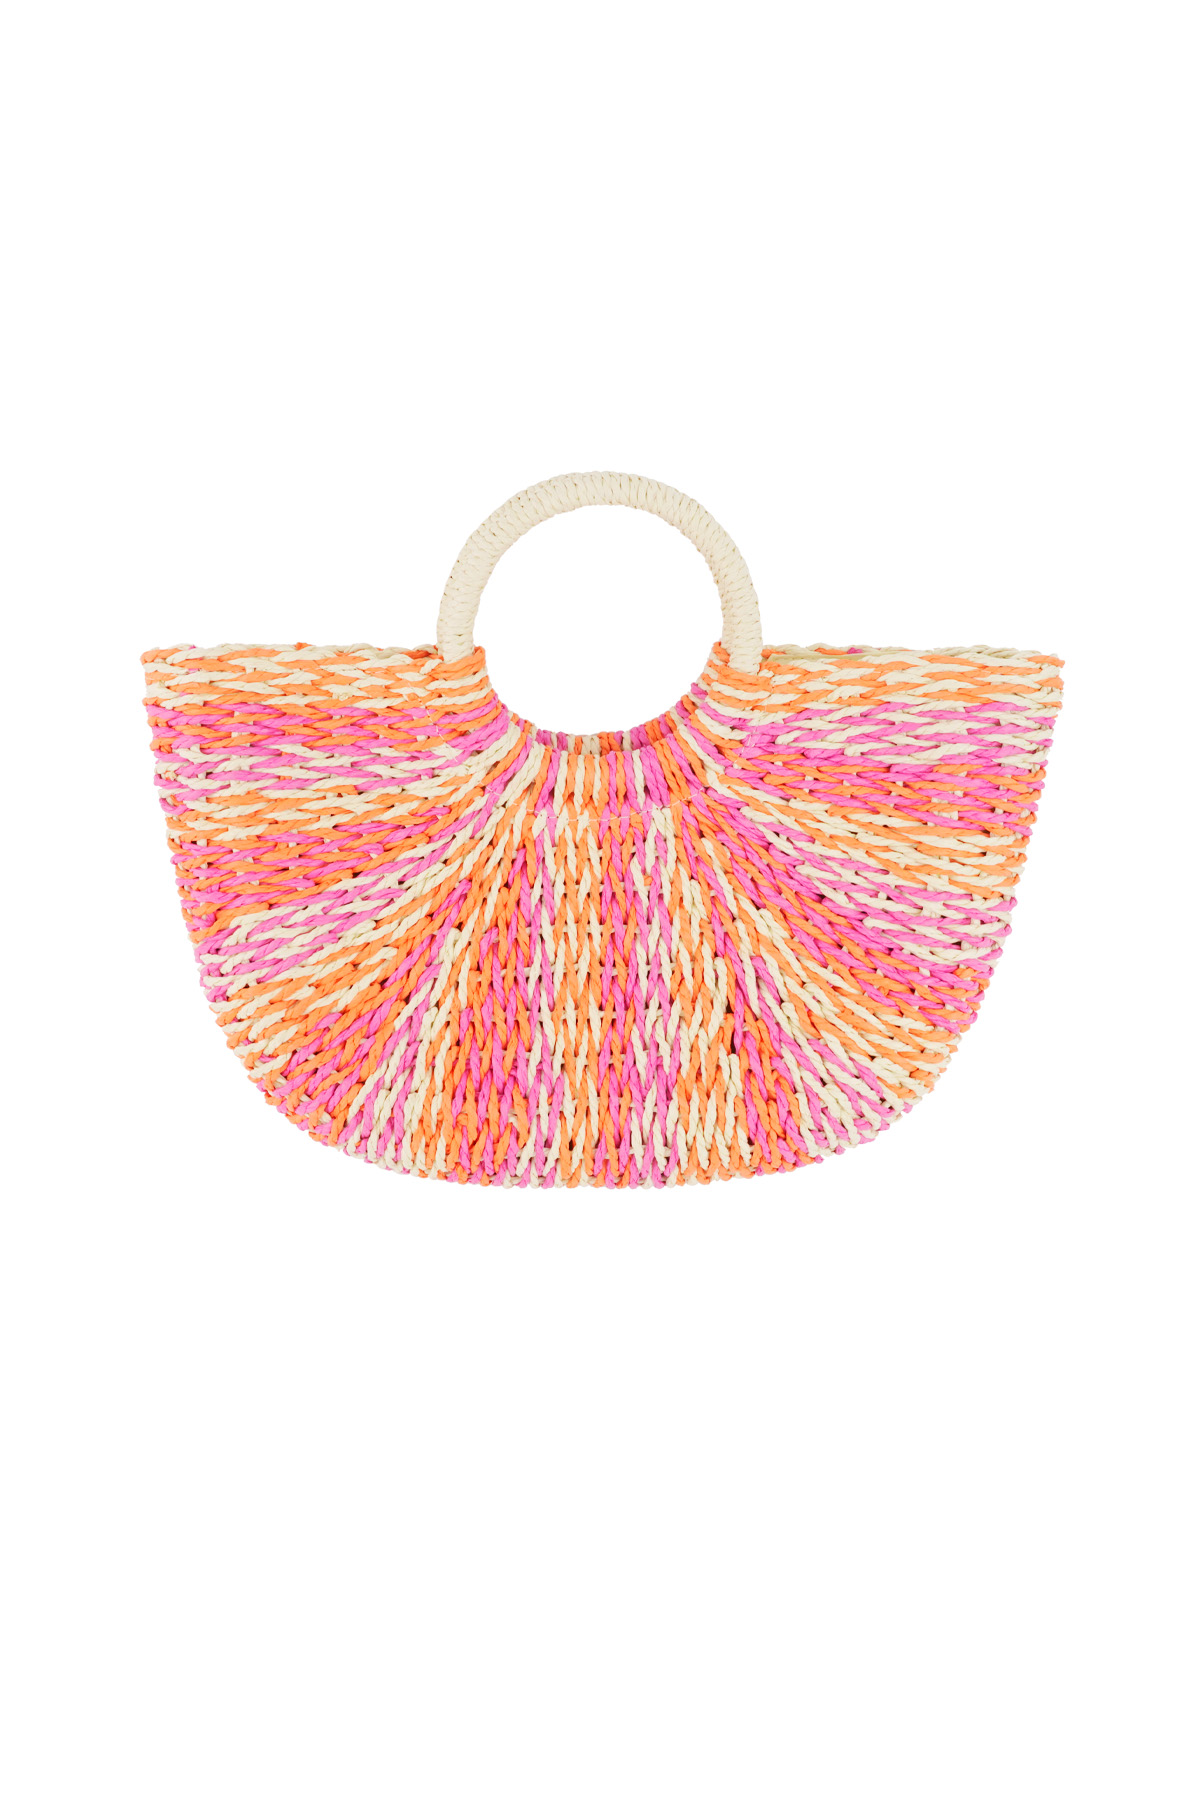 Beach bag eye-catching good - orange pink